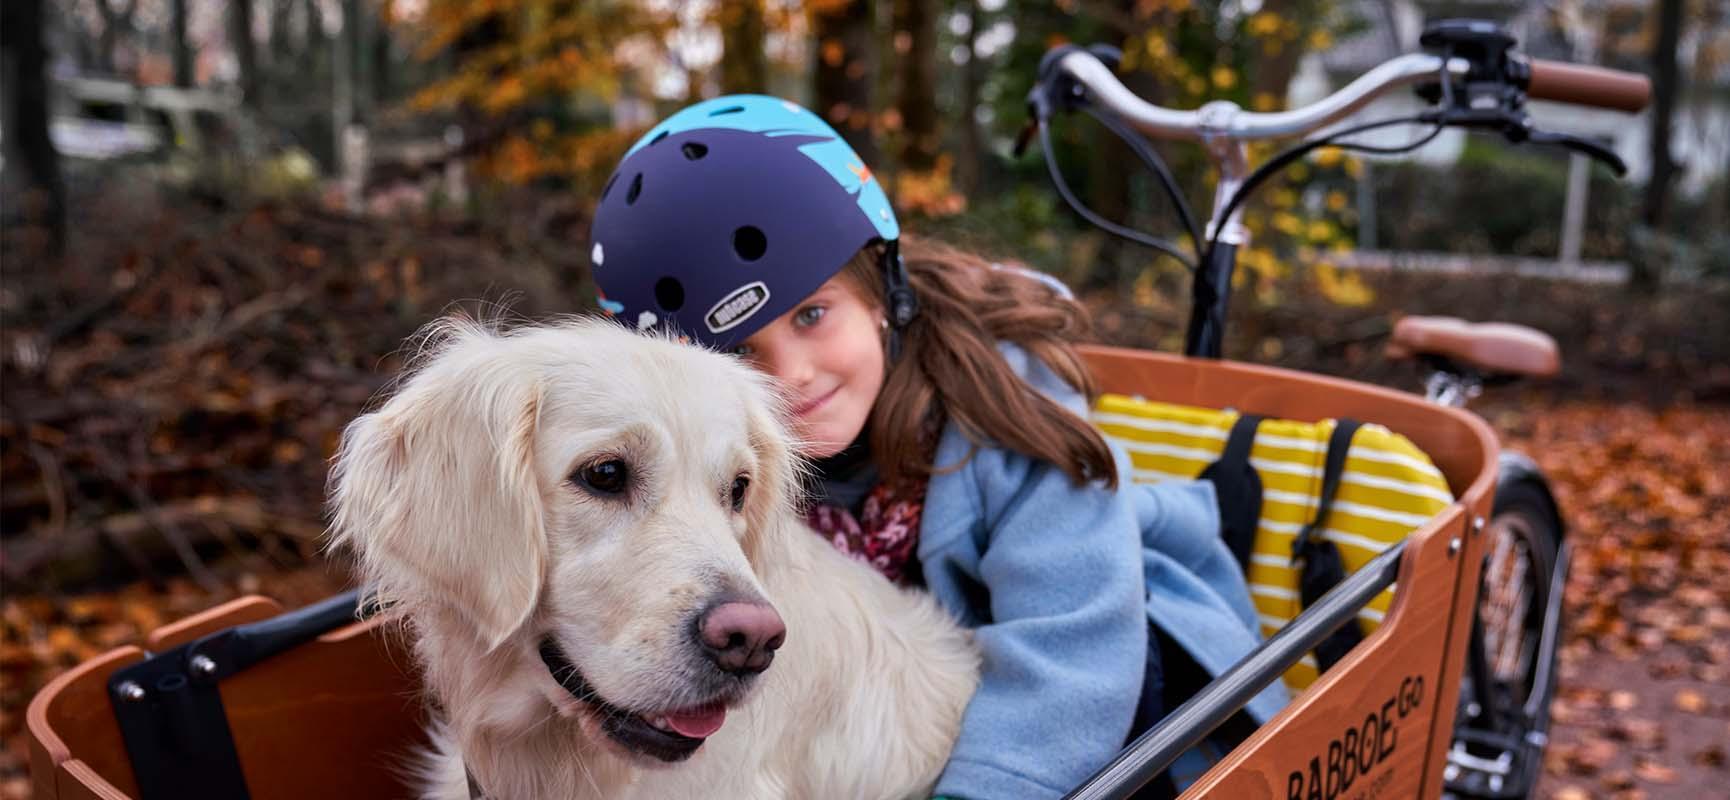 A kids bike helmet. What should you bear in mind?